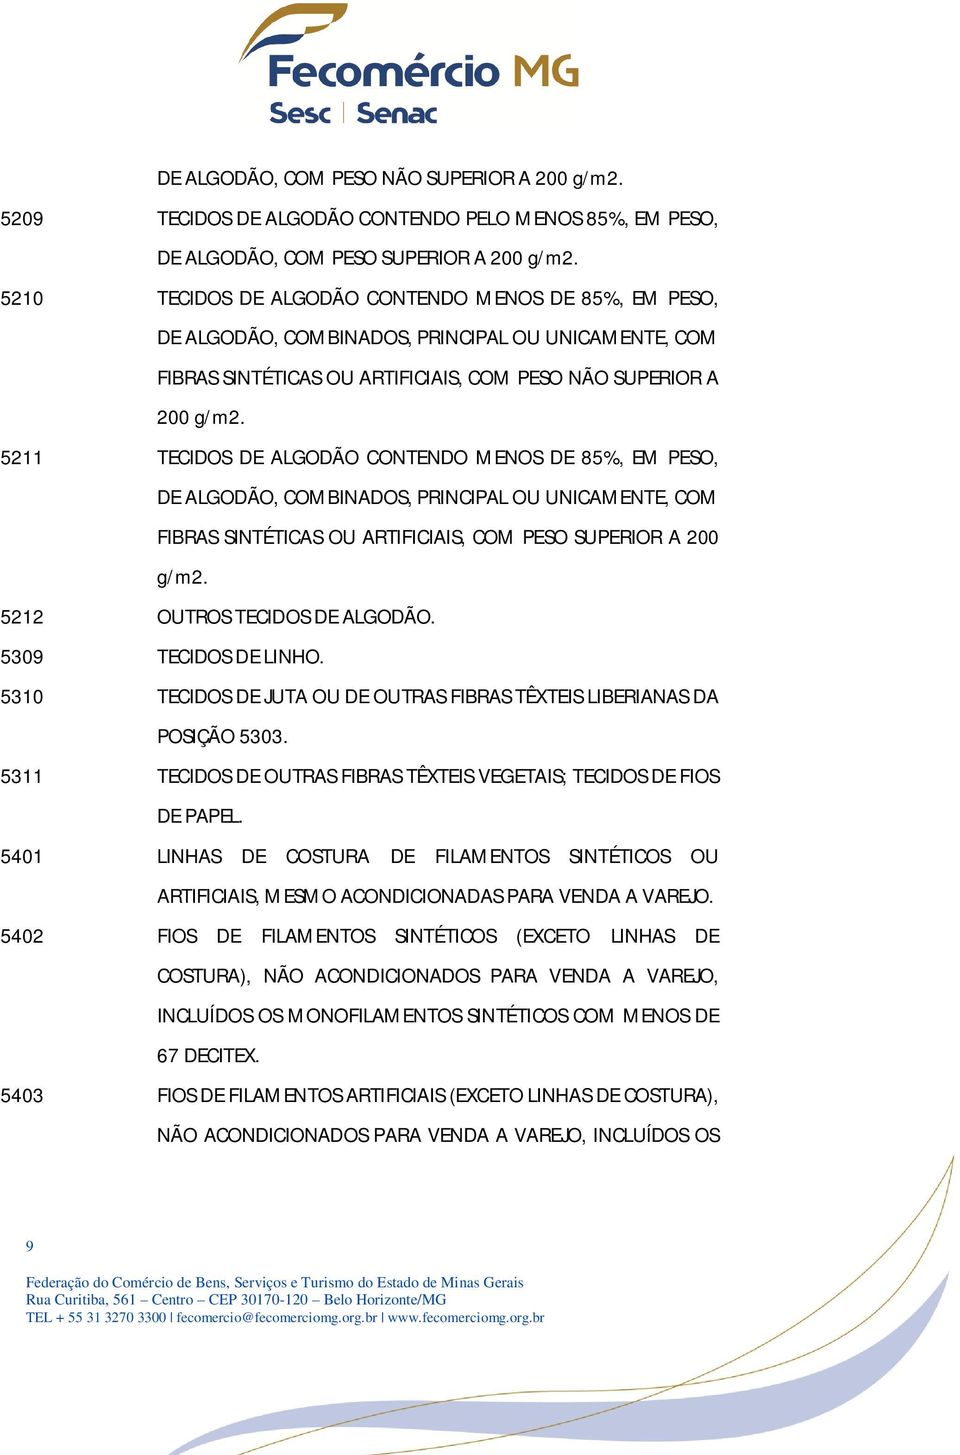 5211 TECIDOS DE ALGODÃO CONTENDO MENOS DE 85%, EM PESO, DE ALGODÃO, COMBINADOS, PRINCIPAL OU UNICAMENTE, COM FIBRAS SINTÉTICAS OU ARTIFICIAIS, COM PESO SUPERIOR A 200 g/m2.